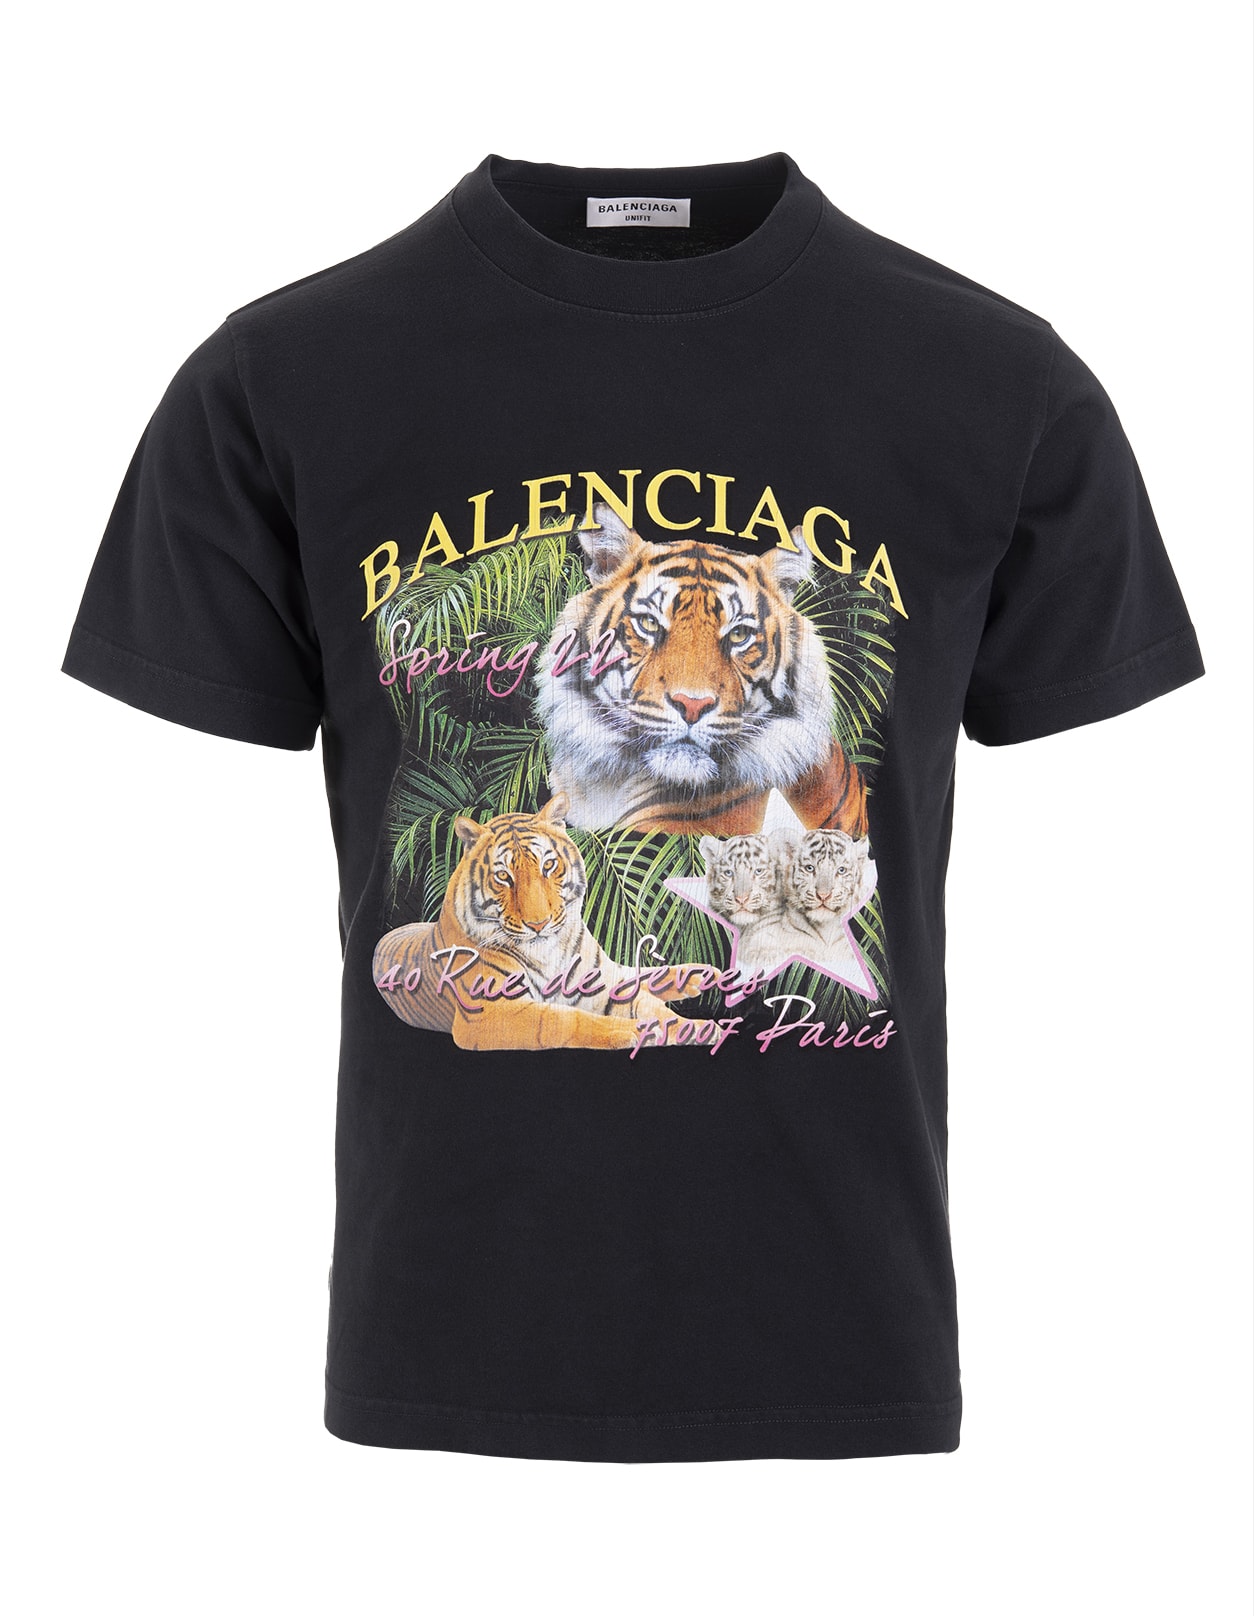 Balenciaga Woman Black Year Of The Tiger Small Fit T-shirt